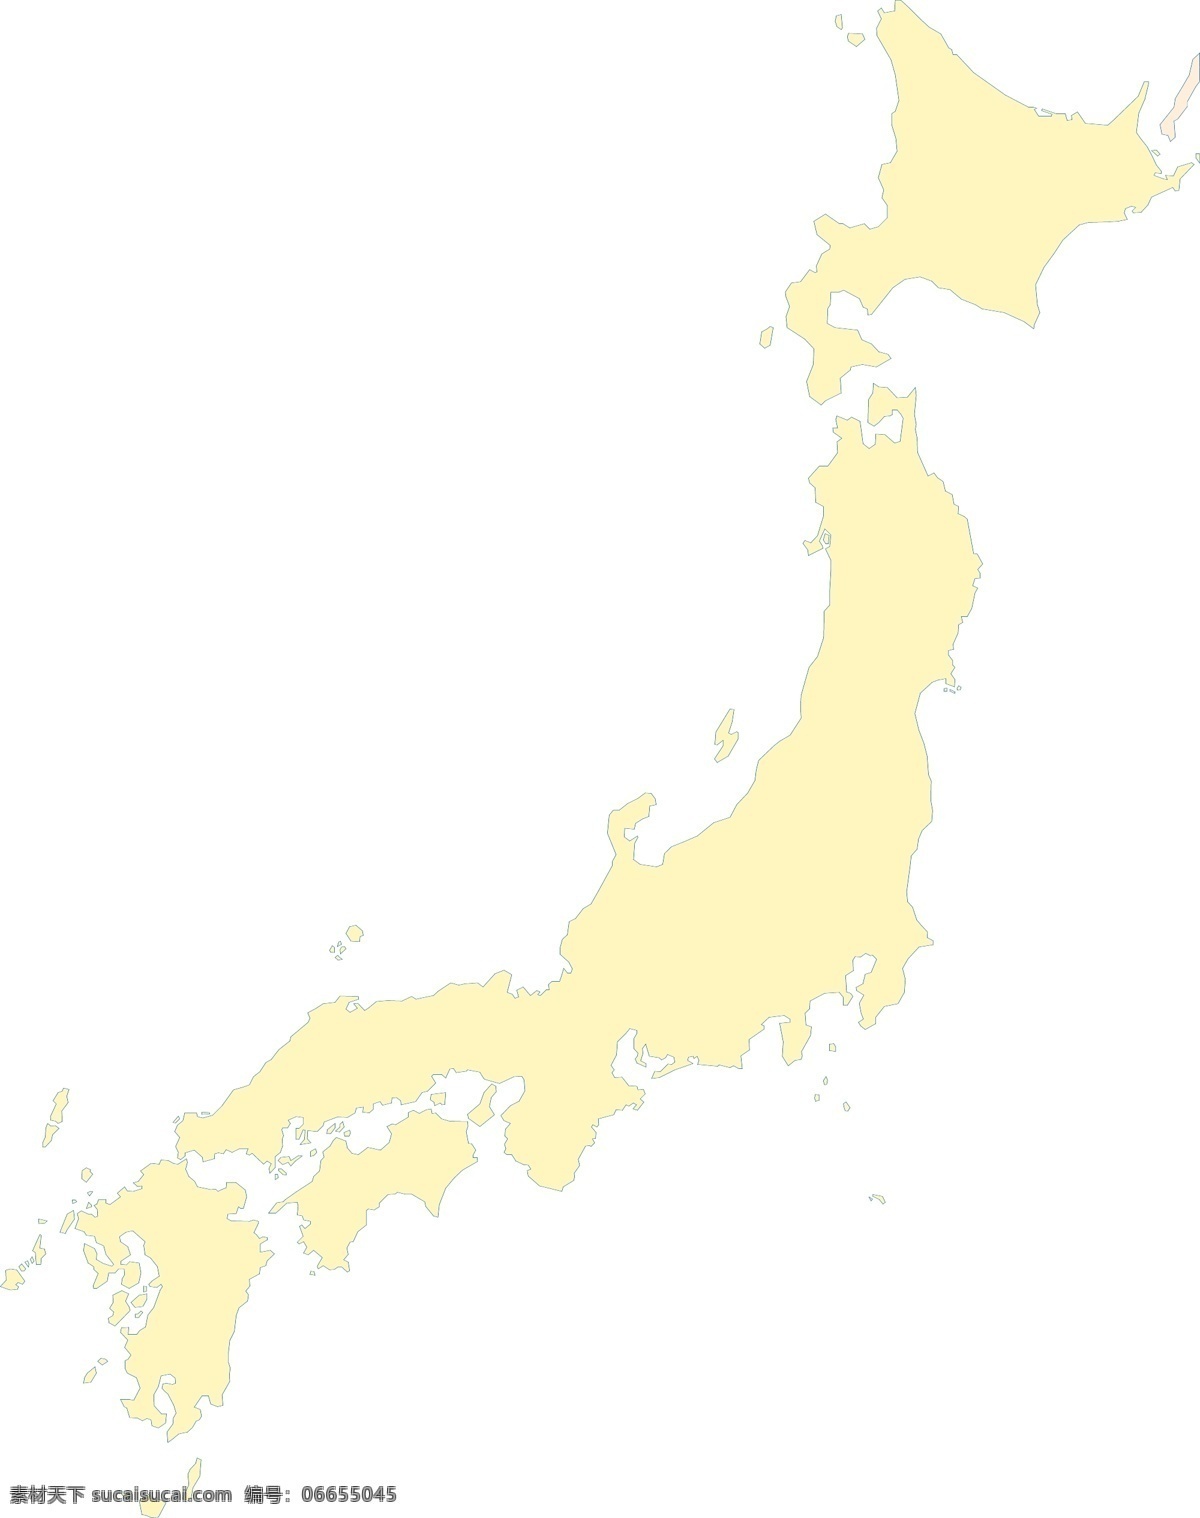 日本地图矢量 日本 地图 矢量 白色